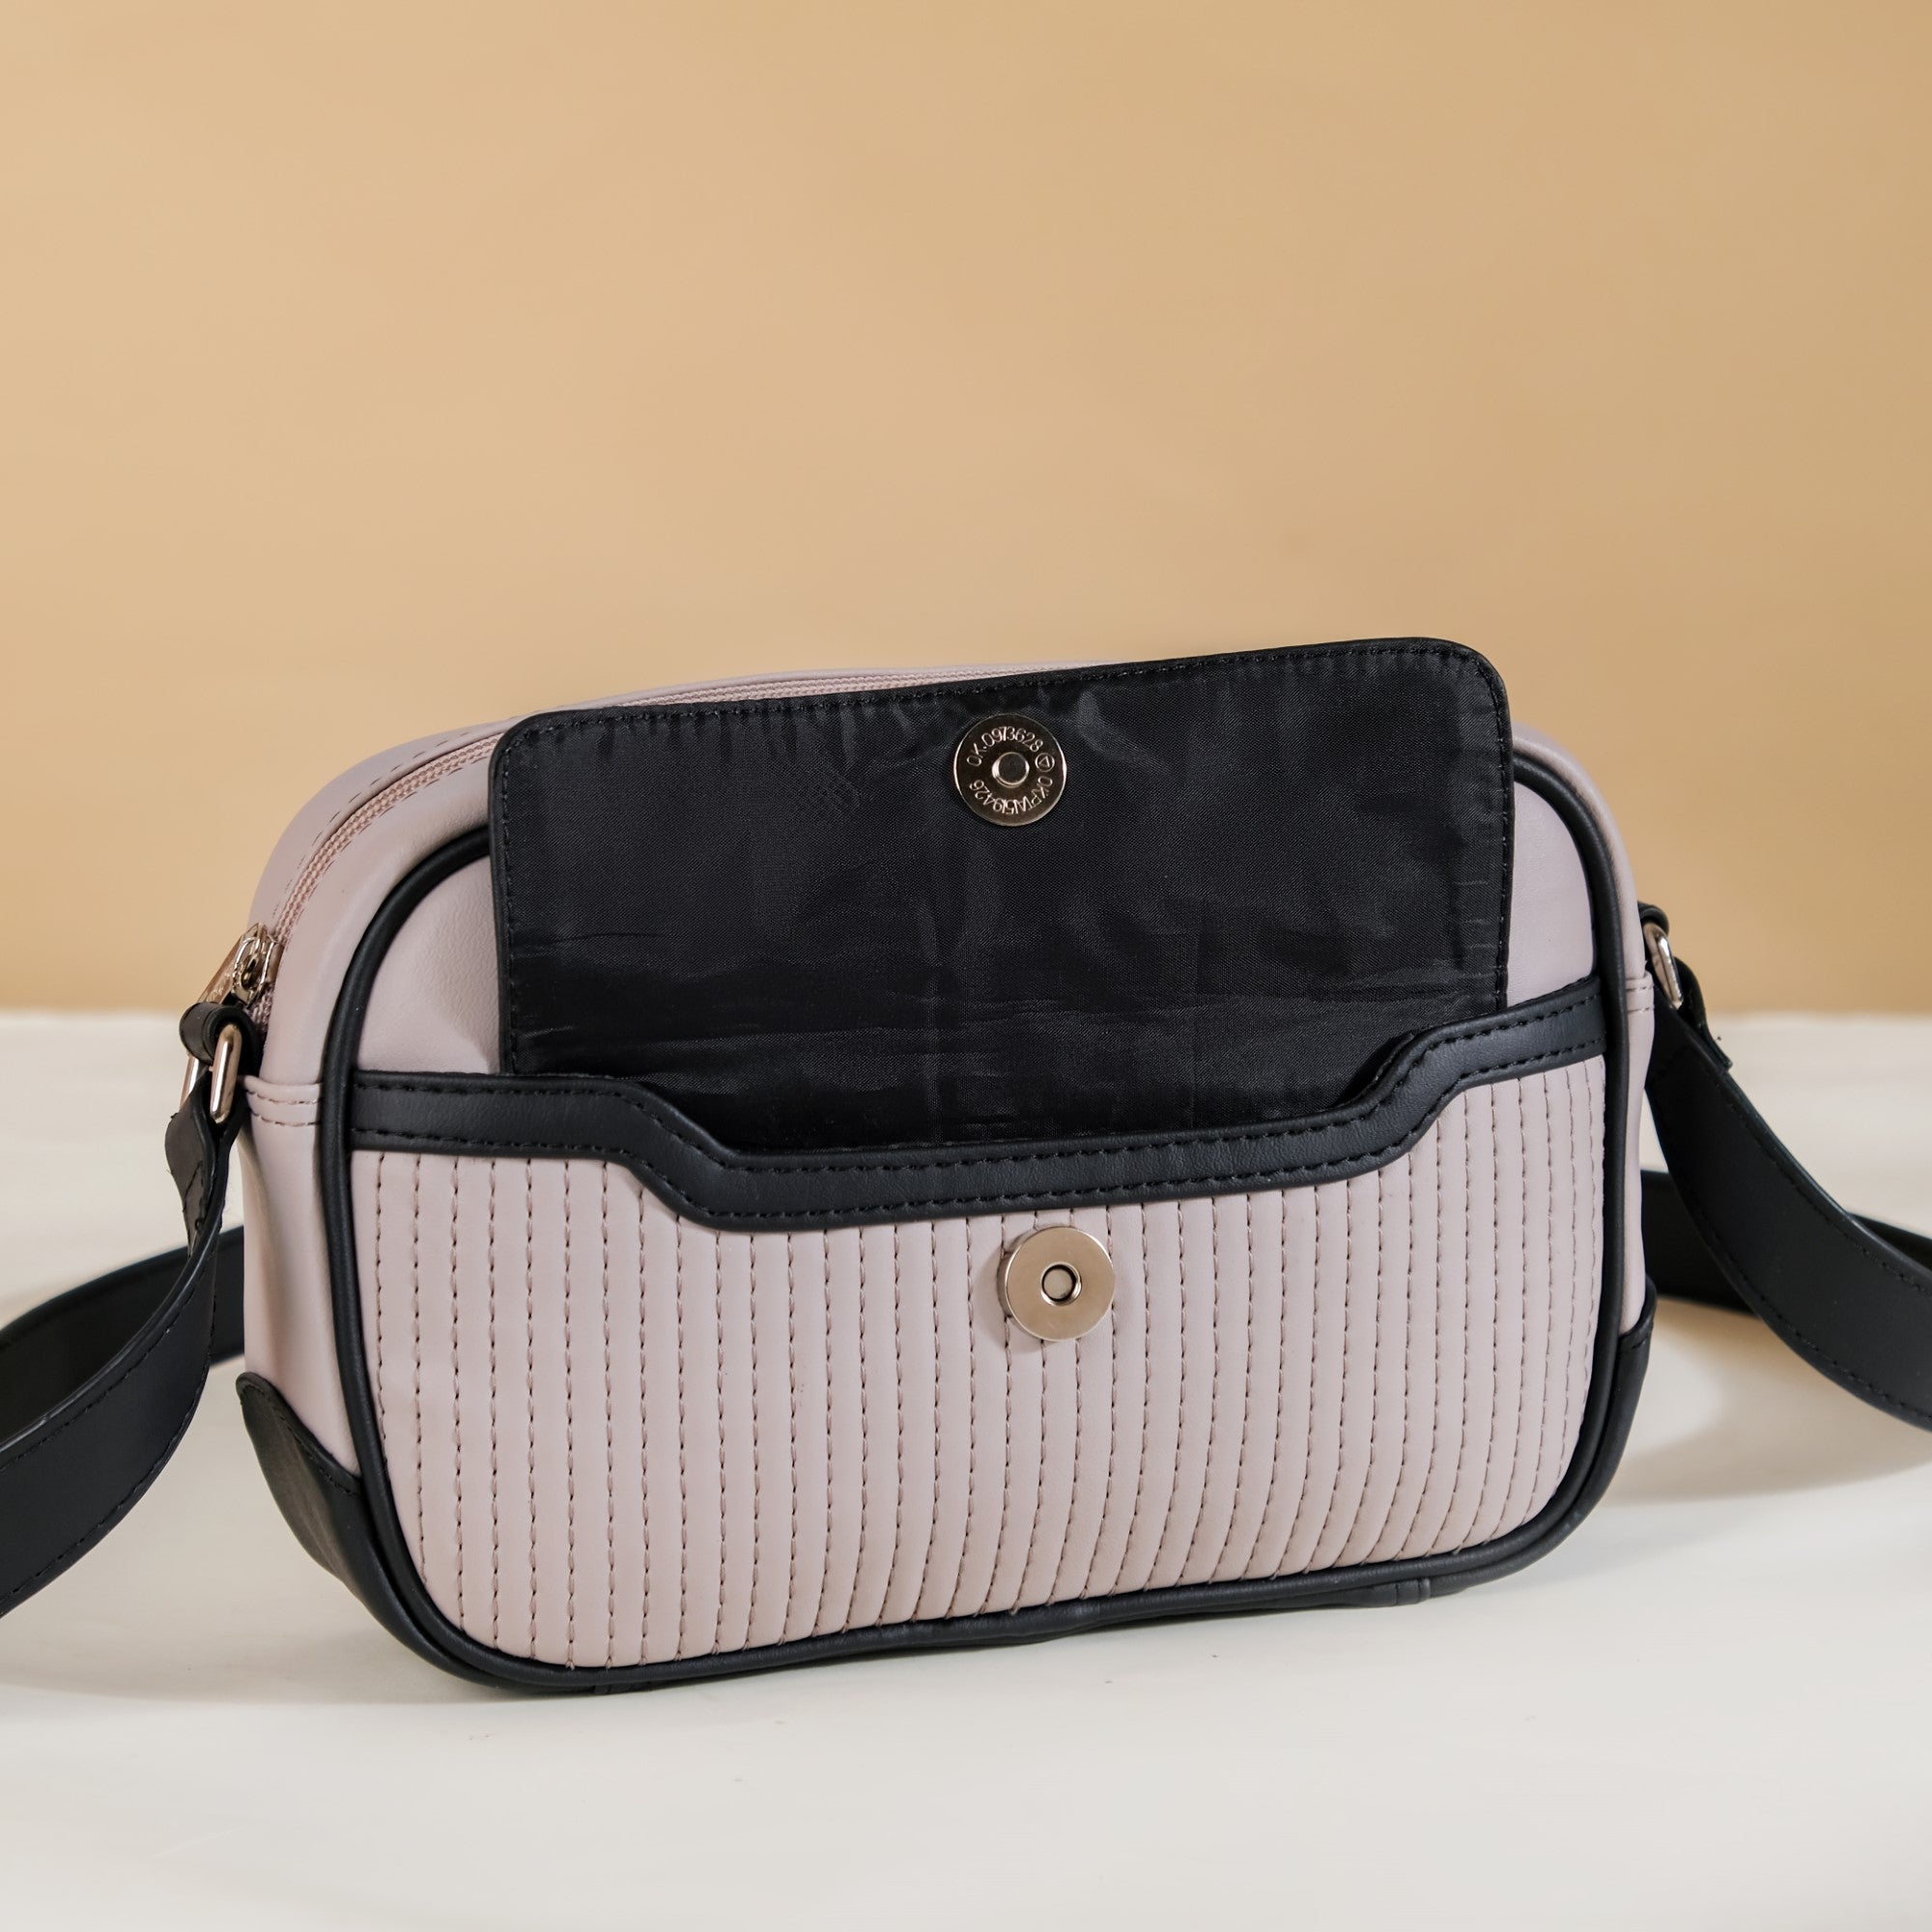 SAJAHAN LEATHER Leather Women Handbags Shoulder Bag Purse 5 L Backpack Black  - Price in India | Flipkart.com